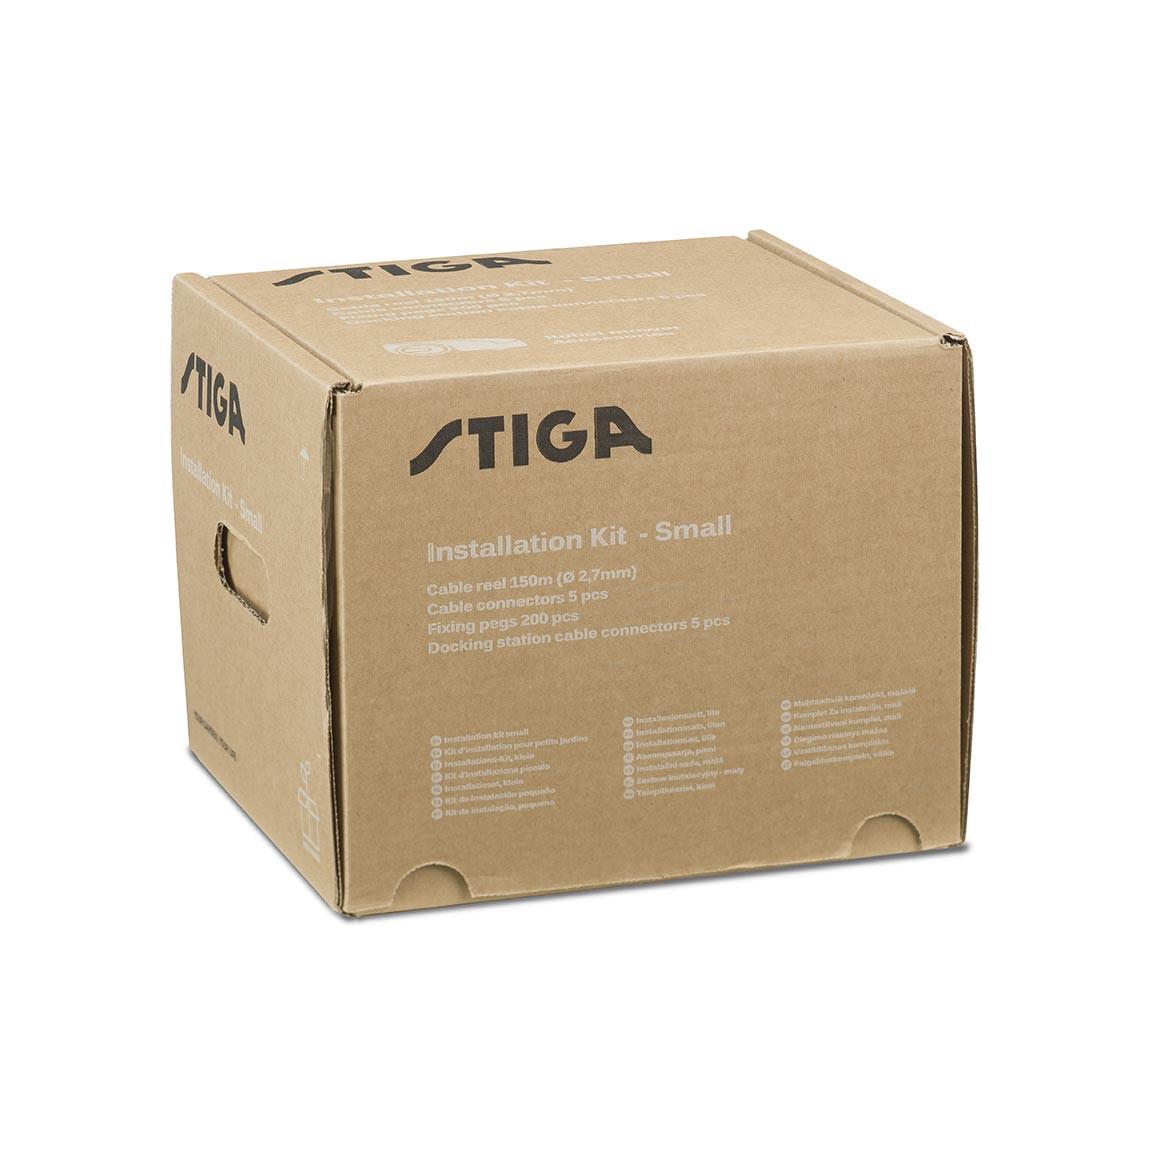 STIGA Installationskit Small - Für G-Serie Mähroboter_verpackung